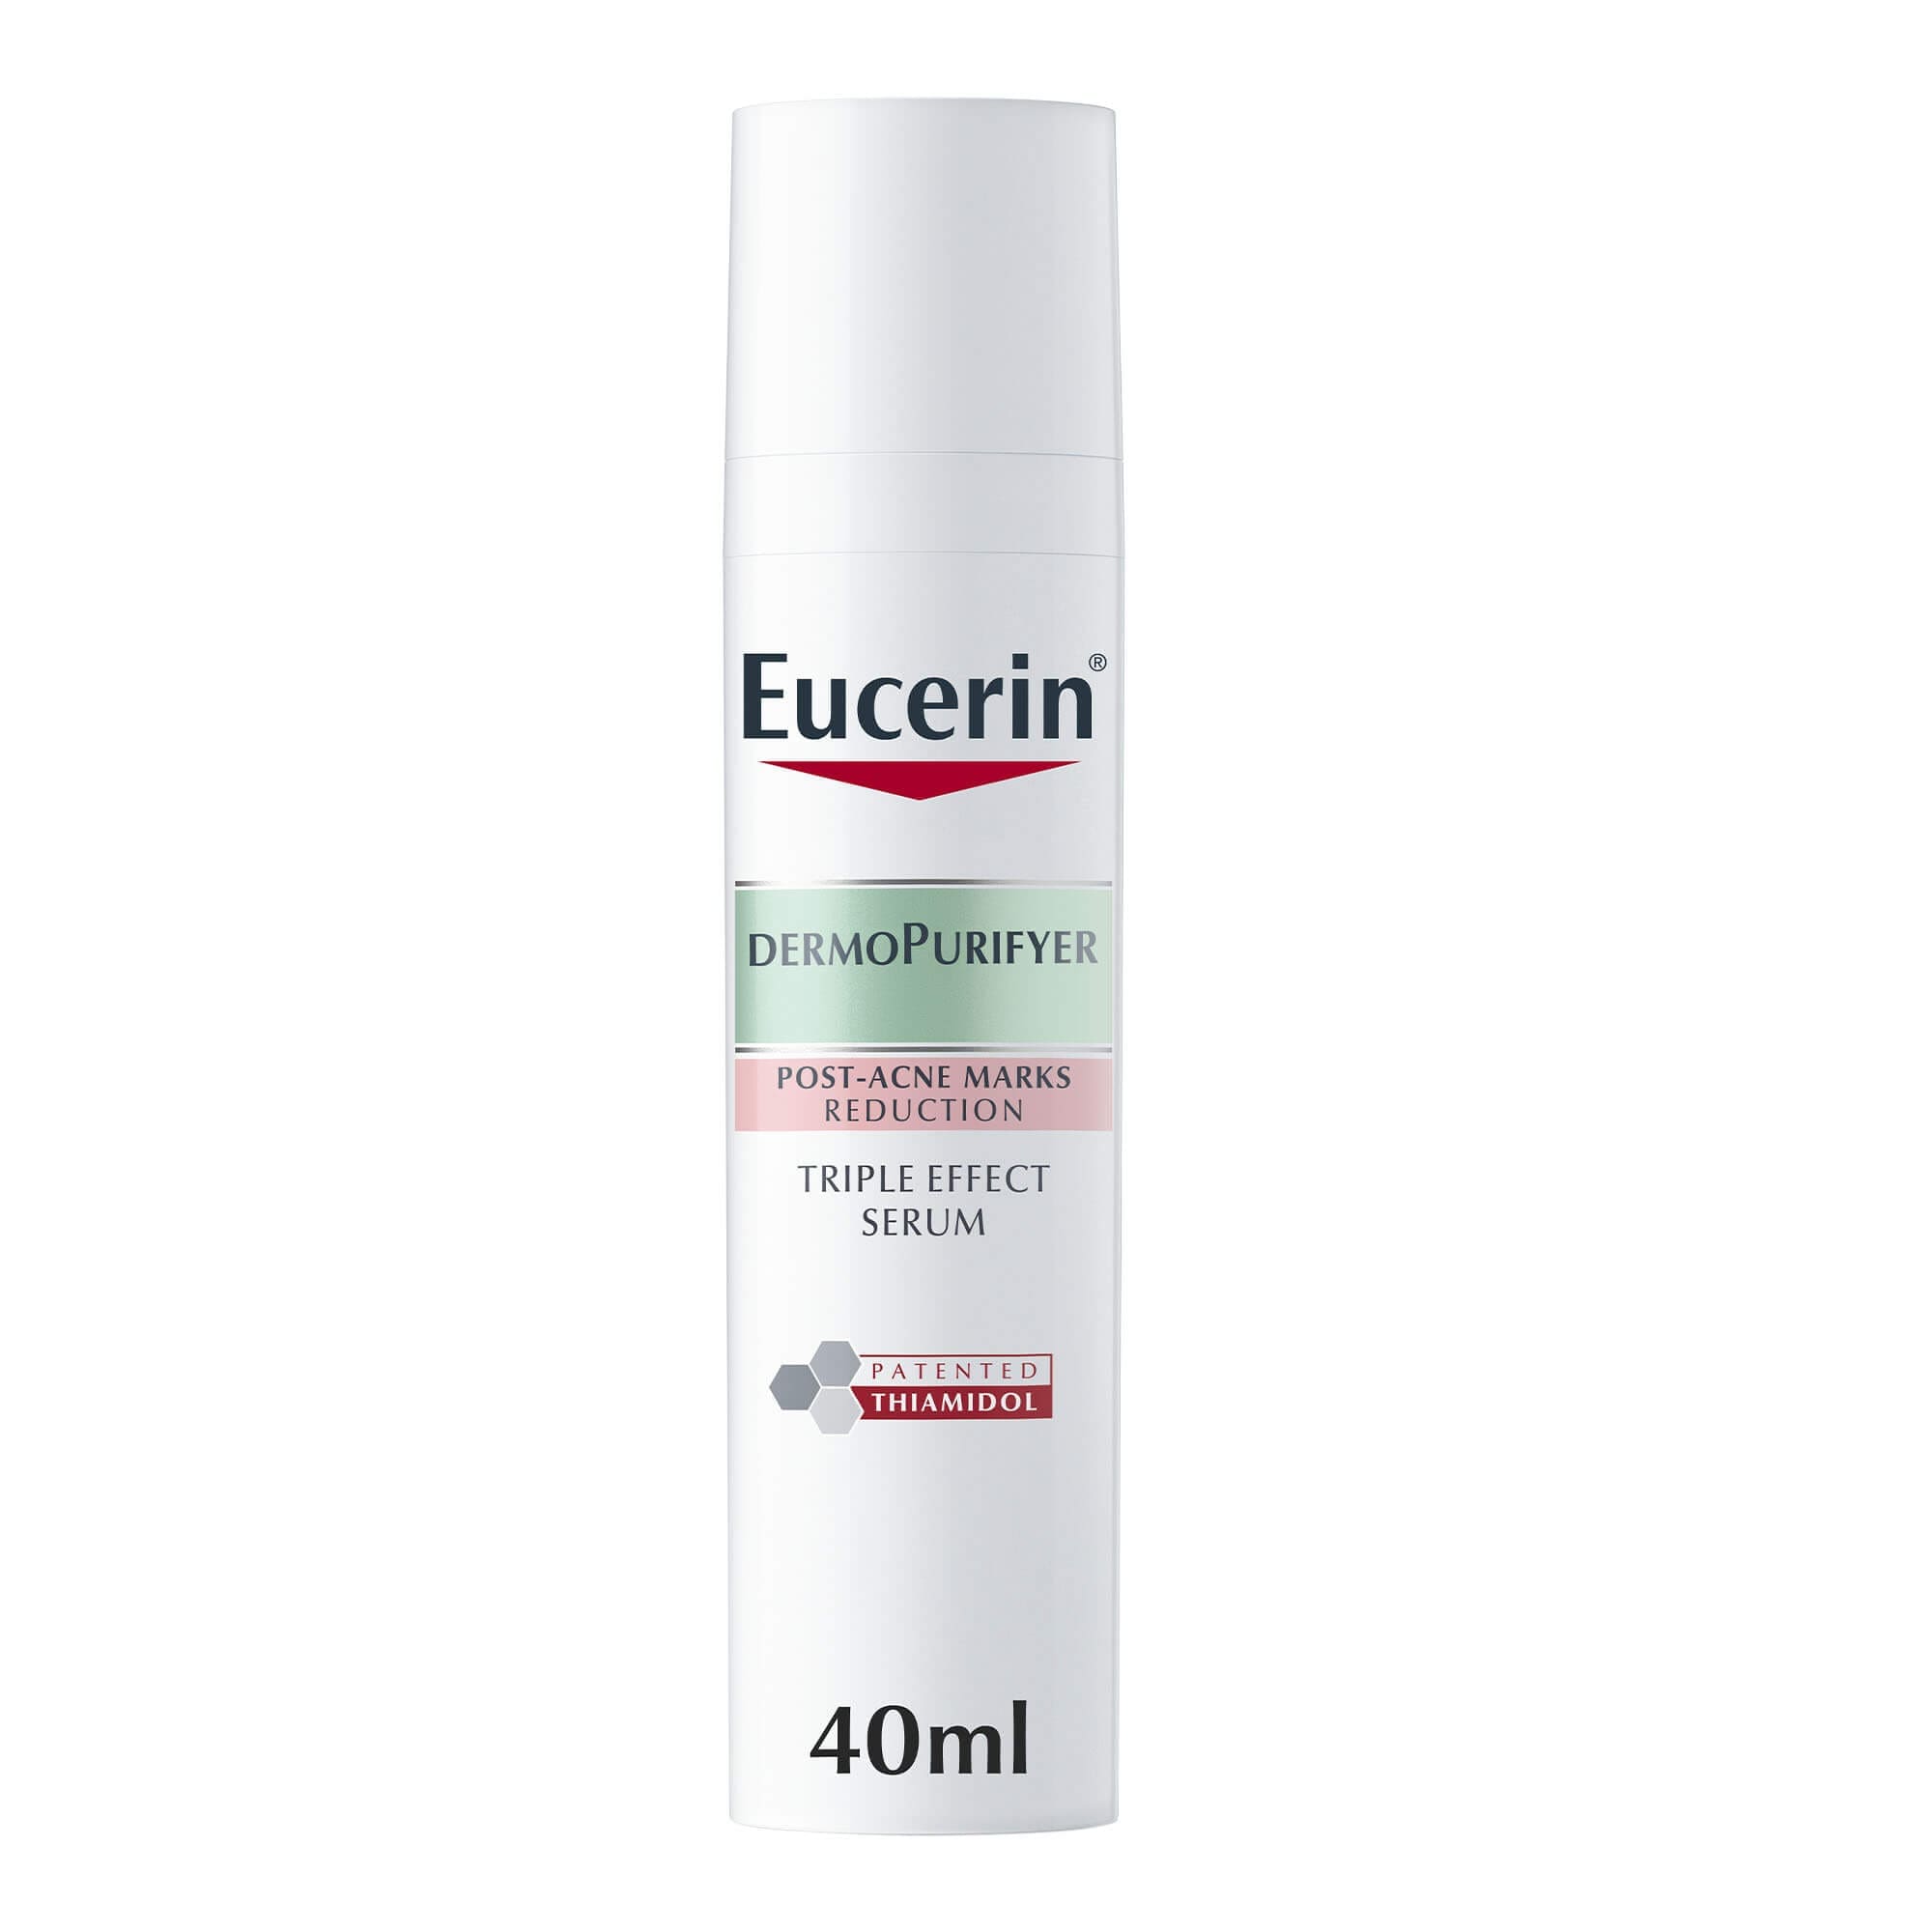 Eucerin DermoPurifyer Triple Effect Serum, 40ml